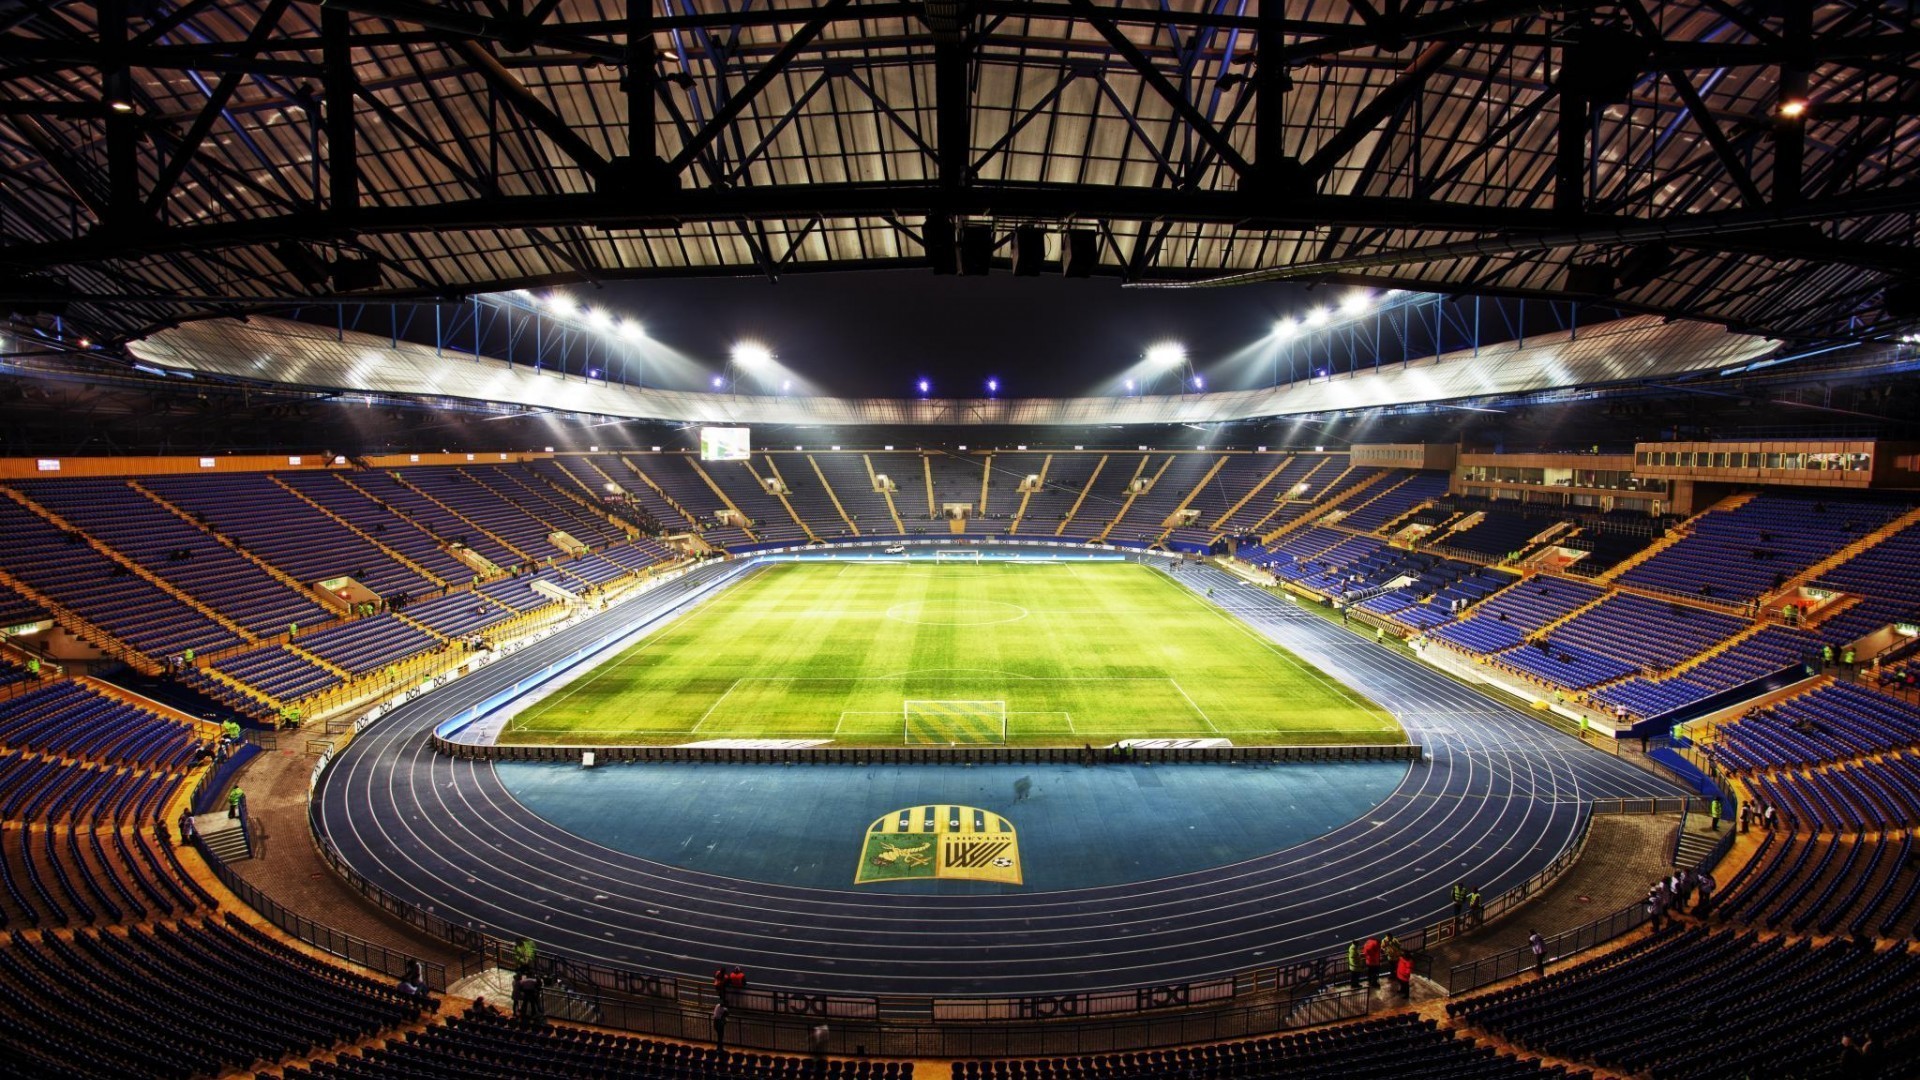 Stadium  desktop Images